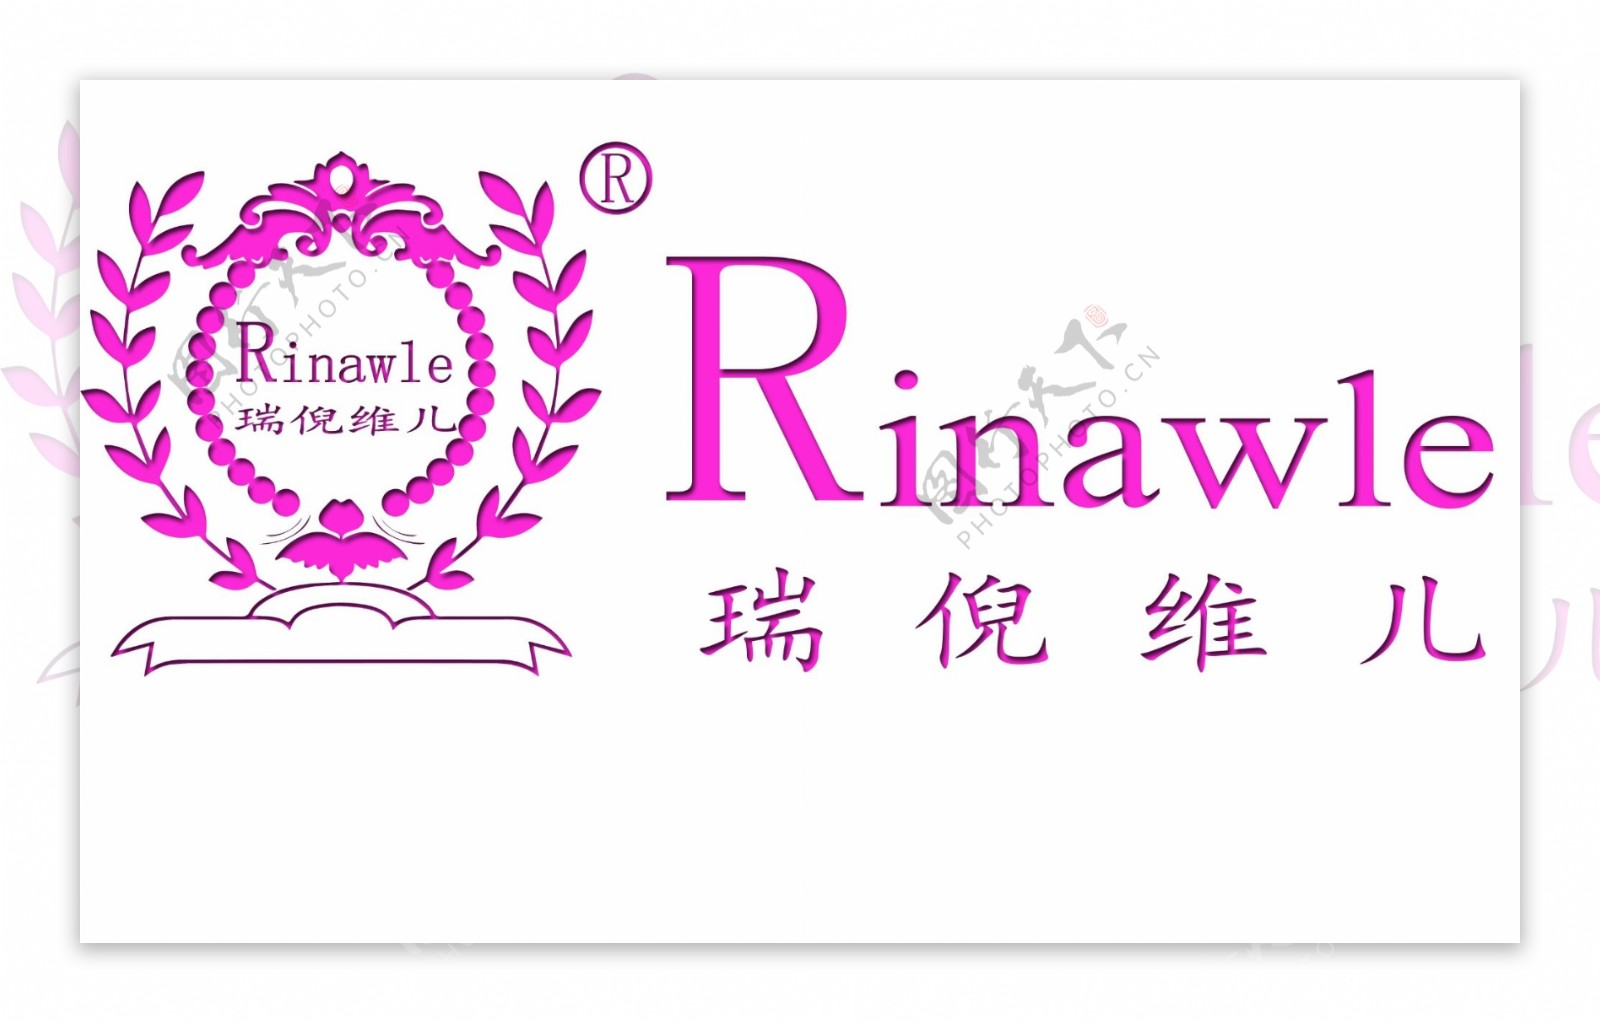 瑞倪维儿logo